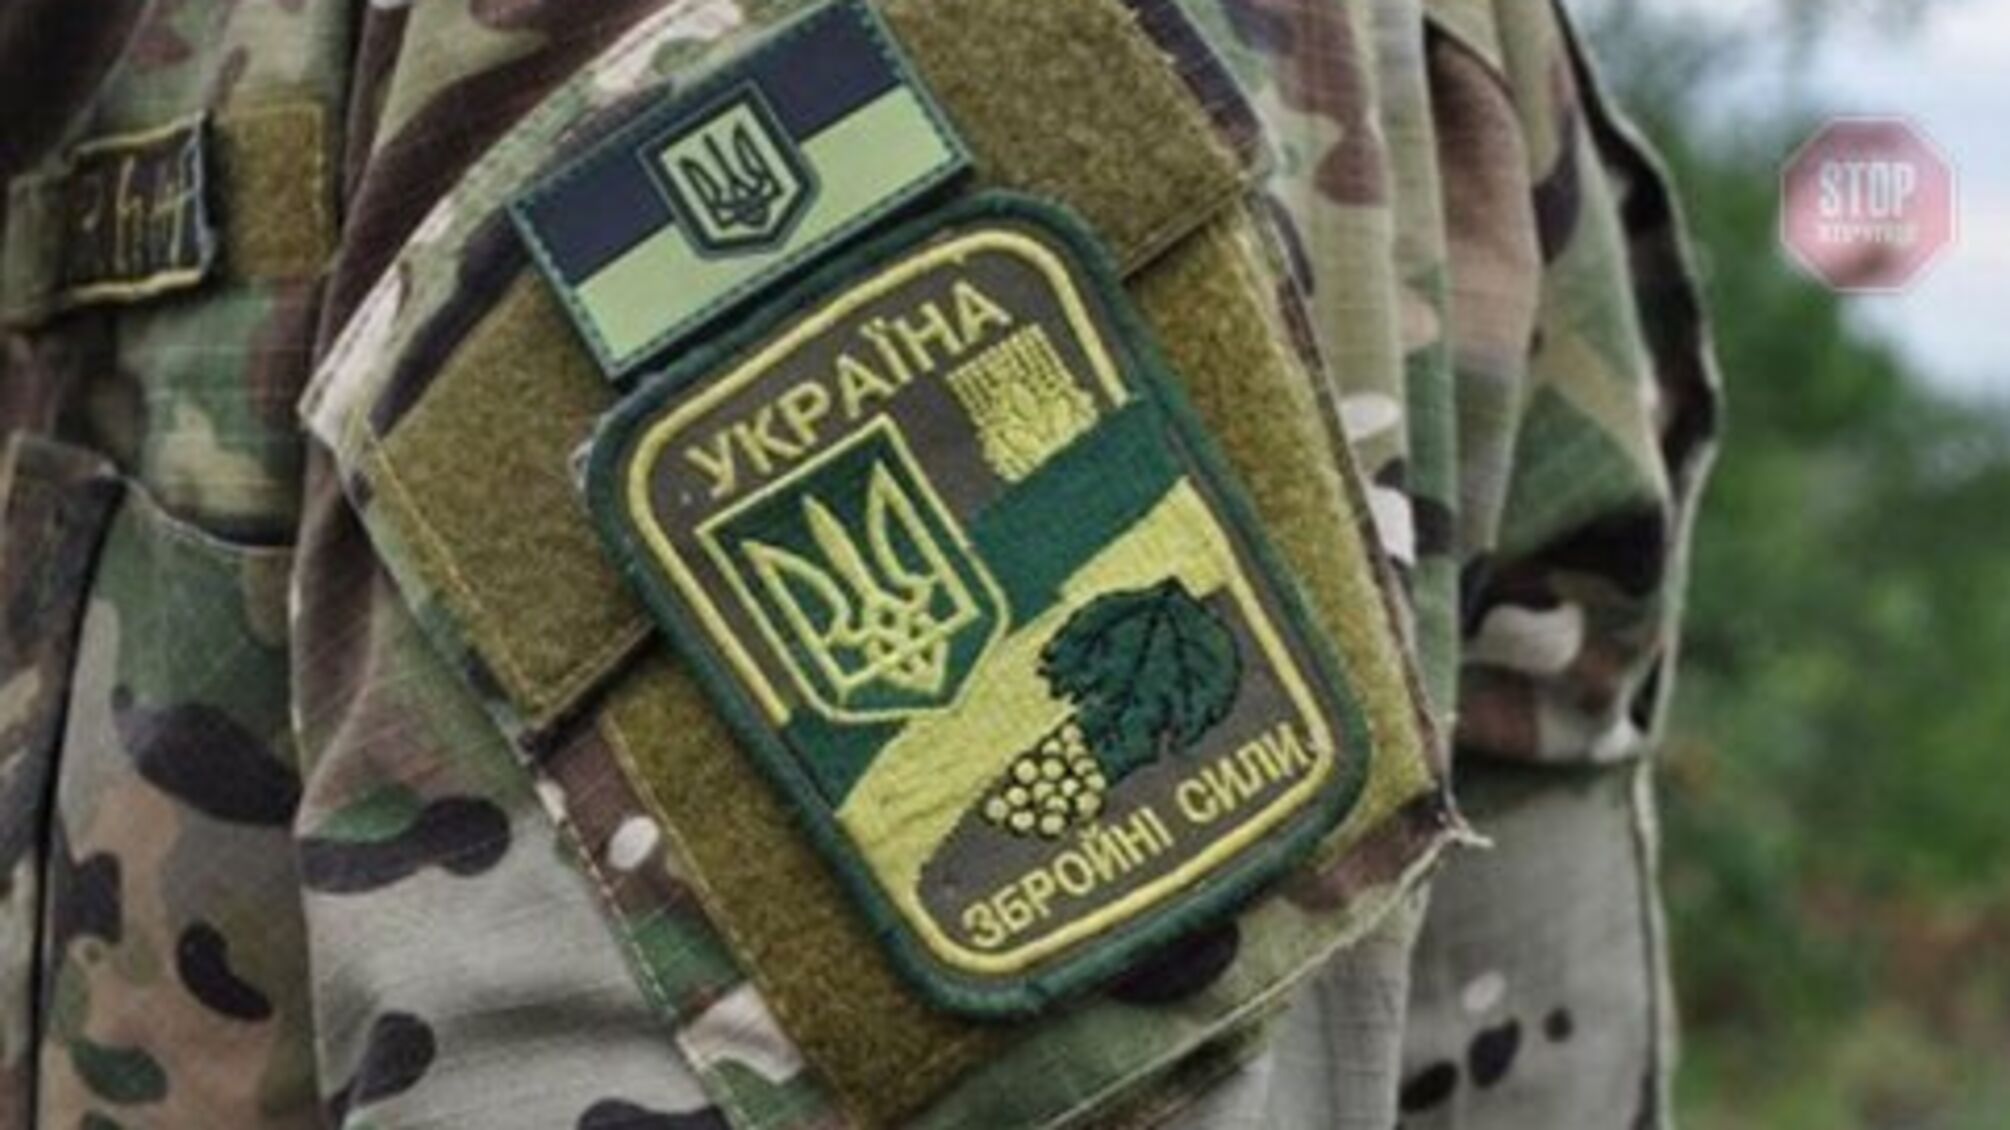 Війна на Донбасі: окупанти продовжують обстріли, поранено військового